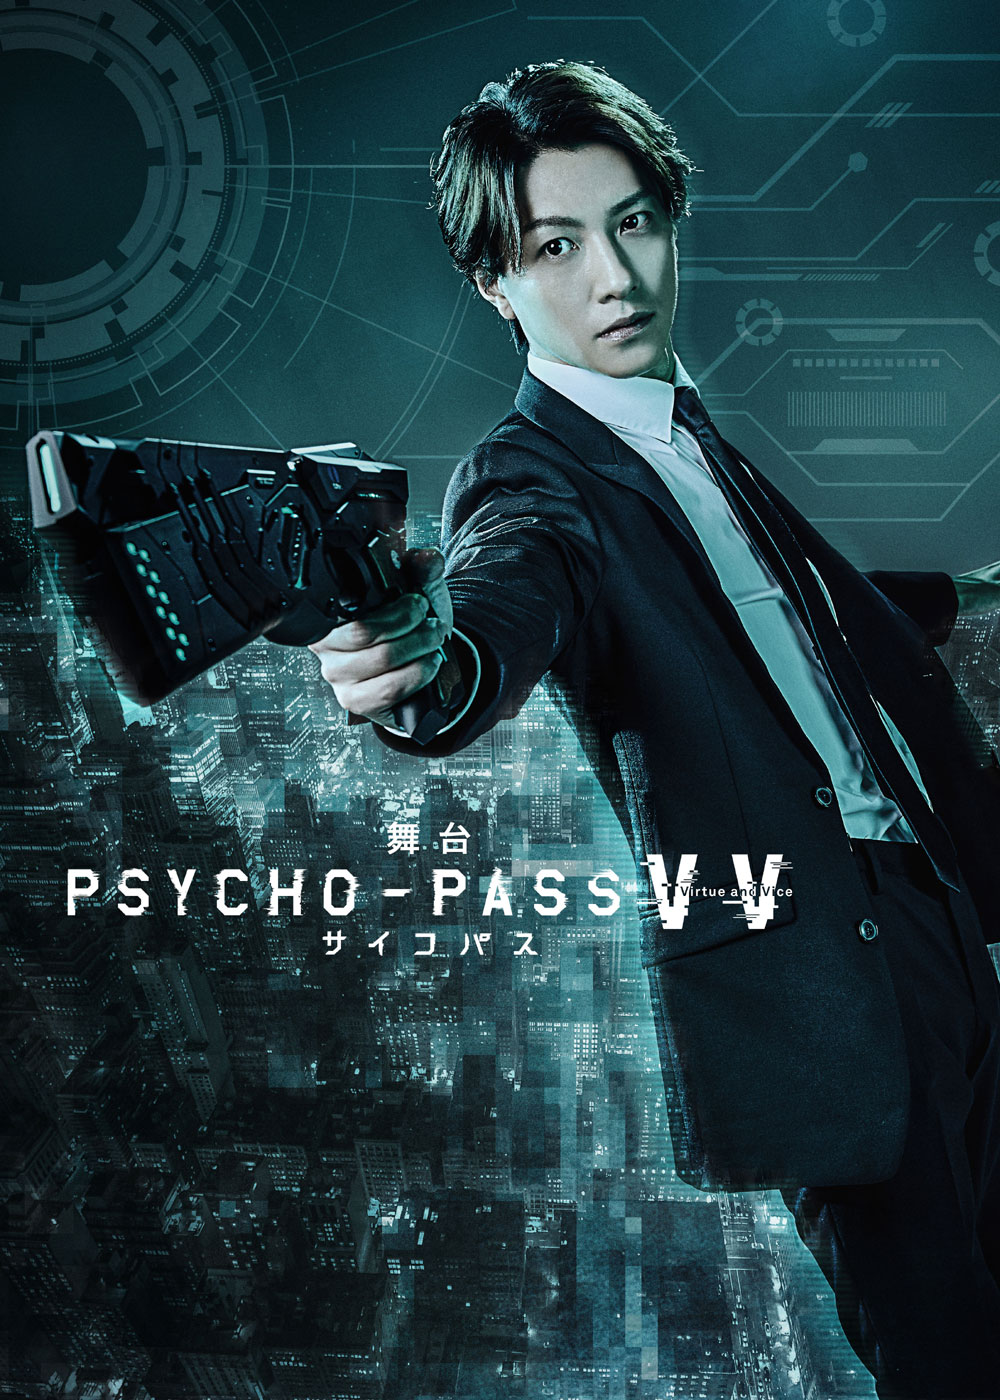 「舞台 PSYCHO-PASS サイコパス Virtue and Vice」 Blu-ray